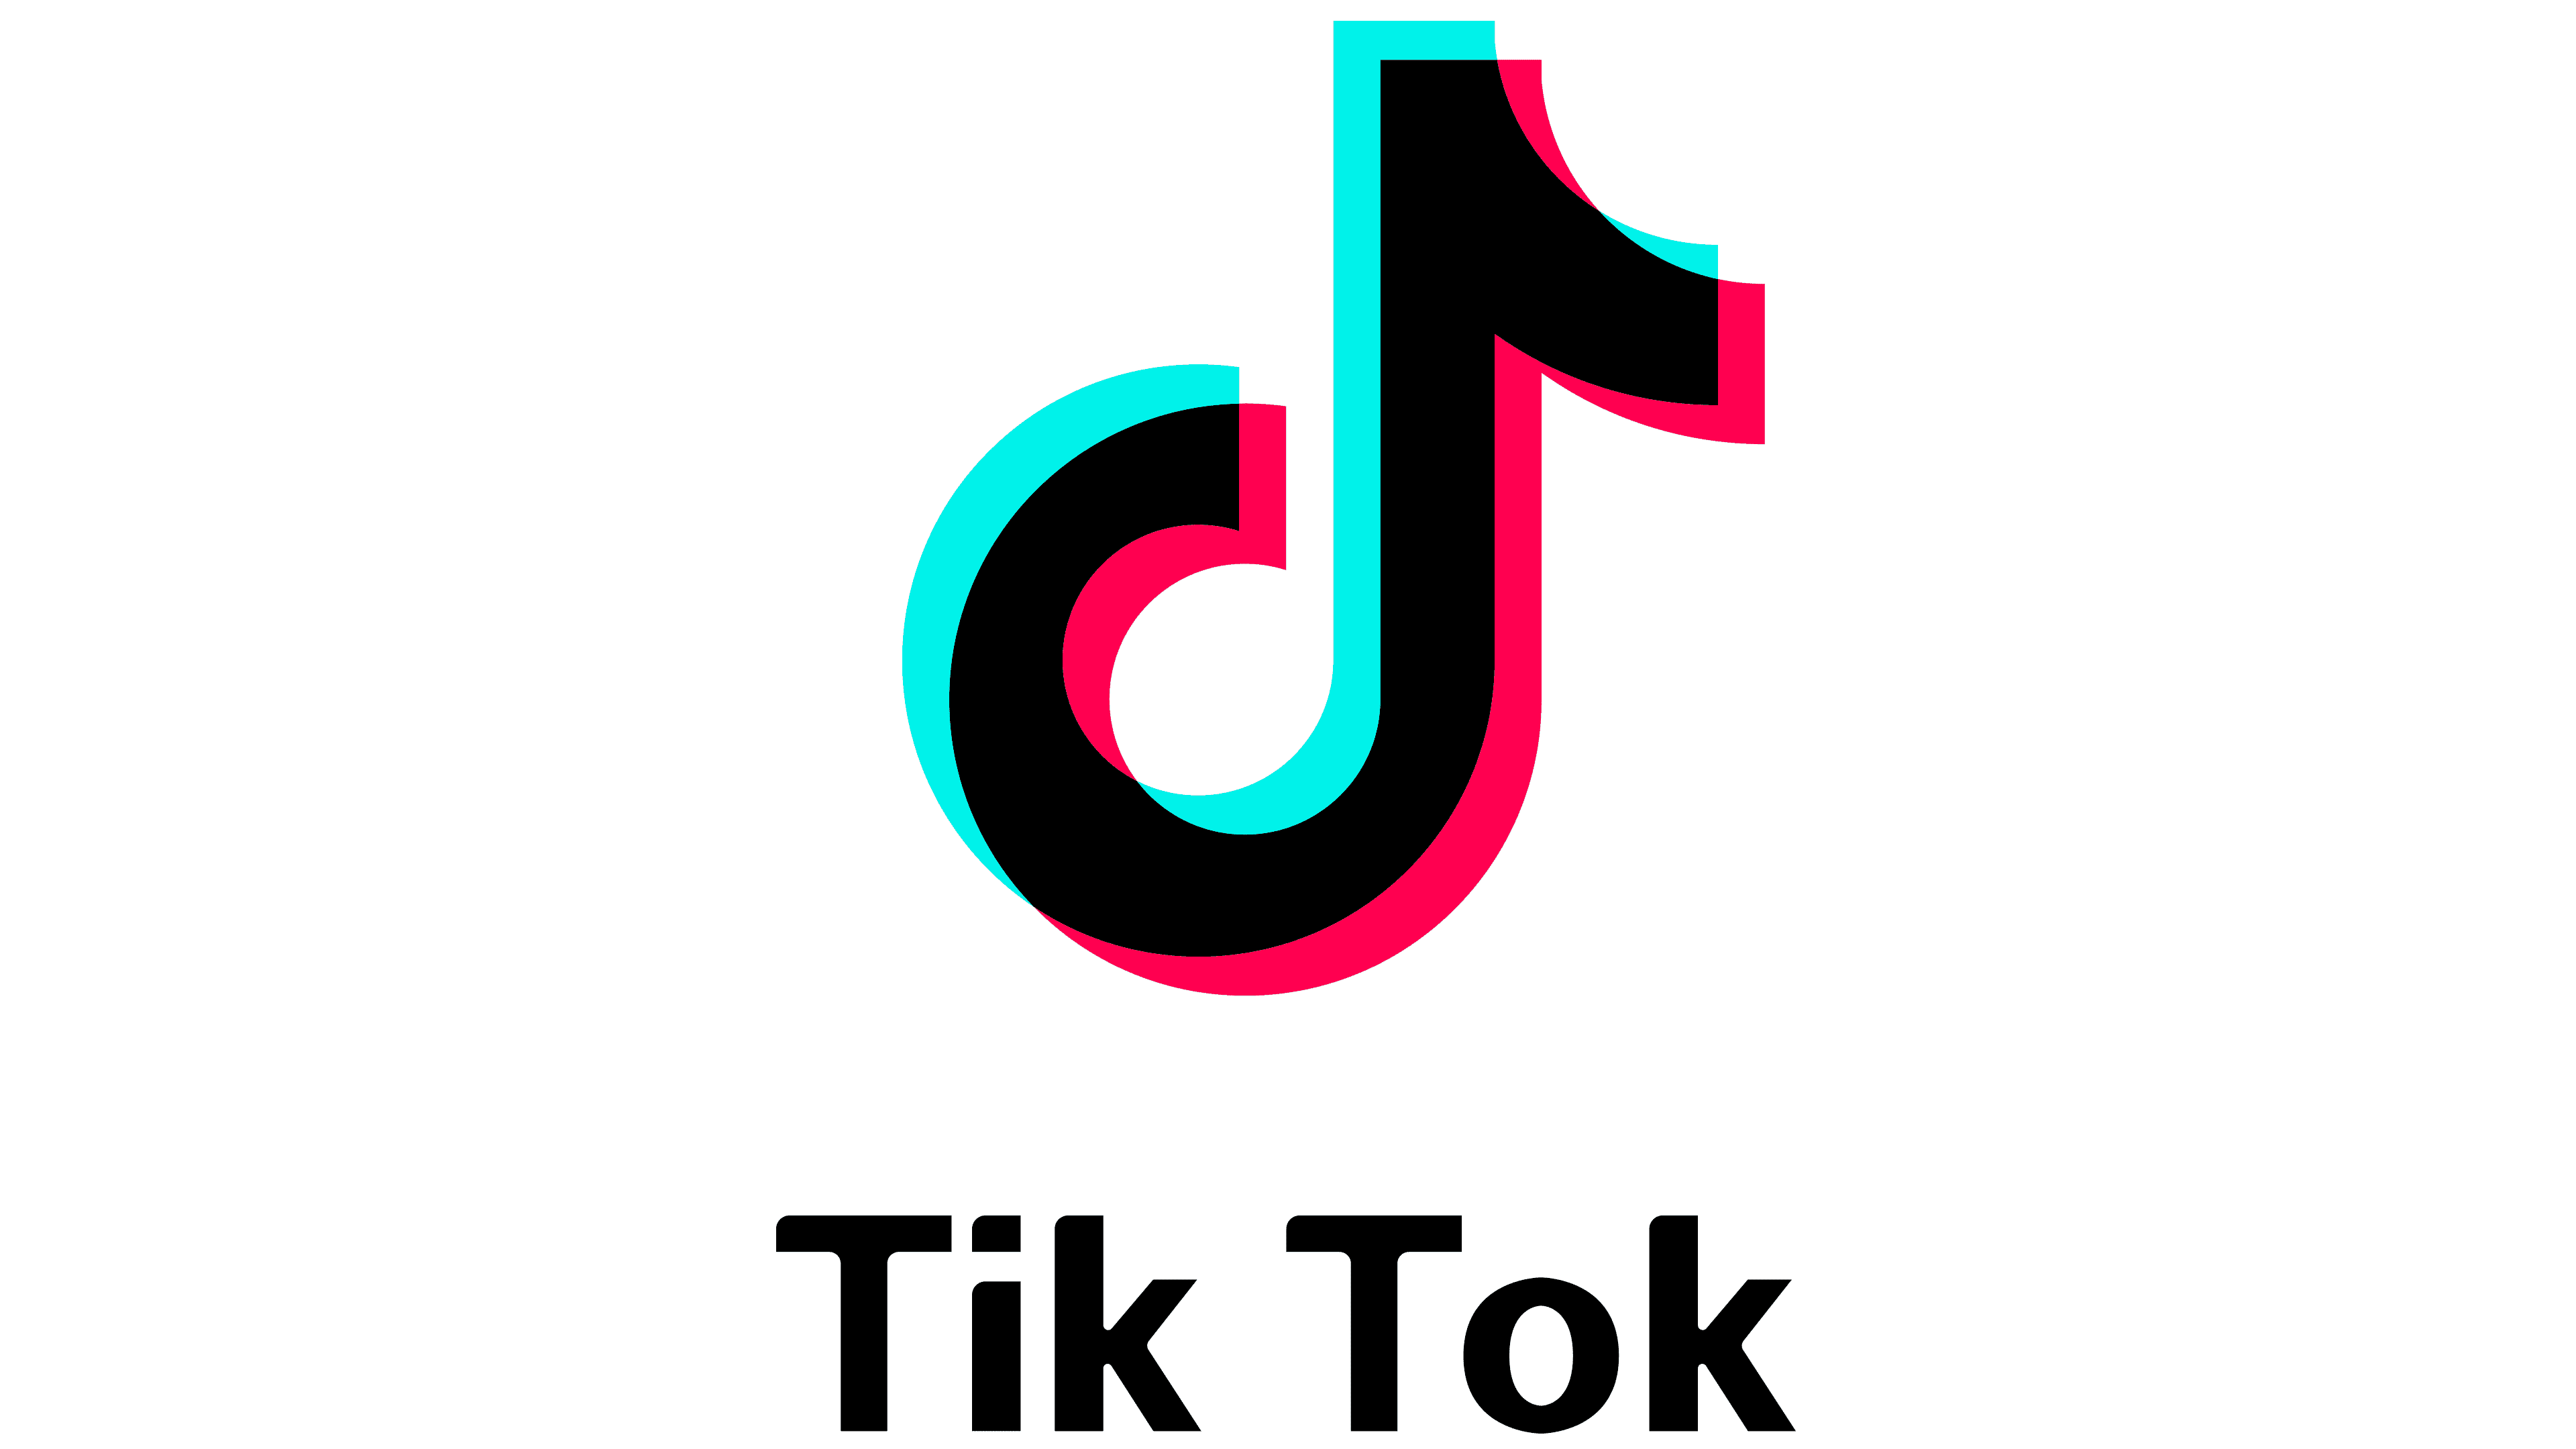 TikTok image